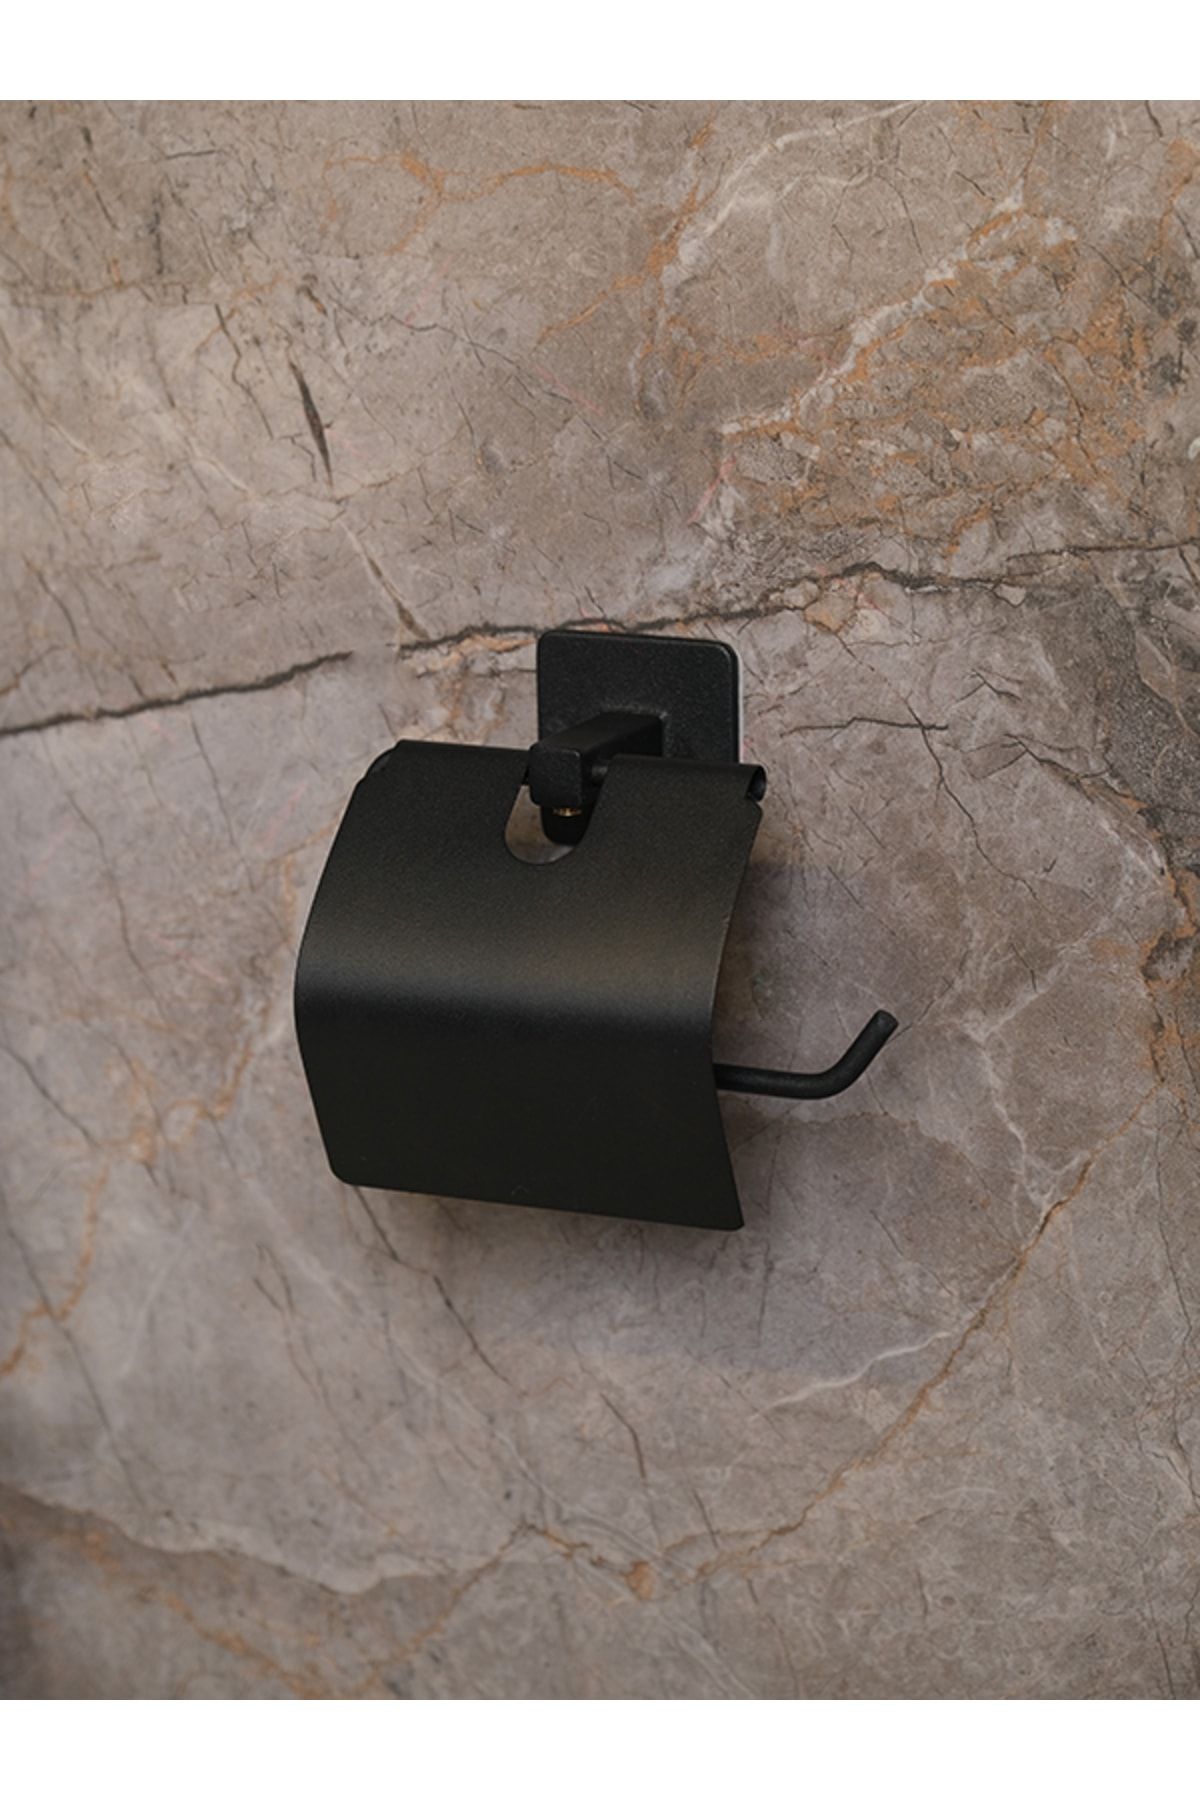 Alper Banyo Yapışkanlı Siyah Kapaklı Kare Açık Tuvalet Kağıtlığı Wc Kağıtlık Tuvalet Kağıdı Askısı